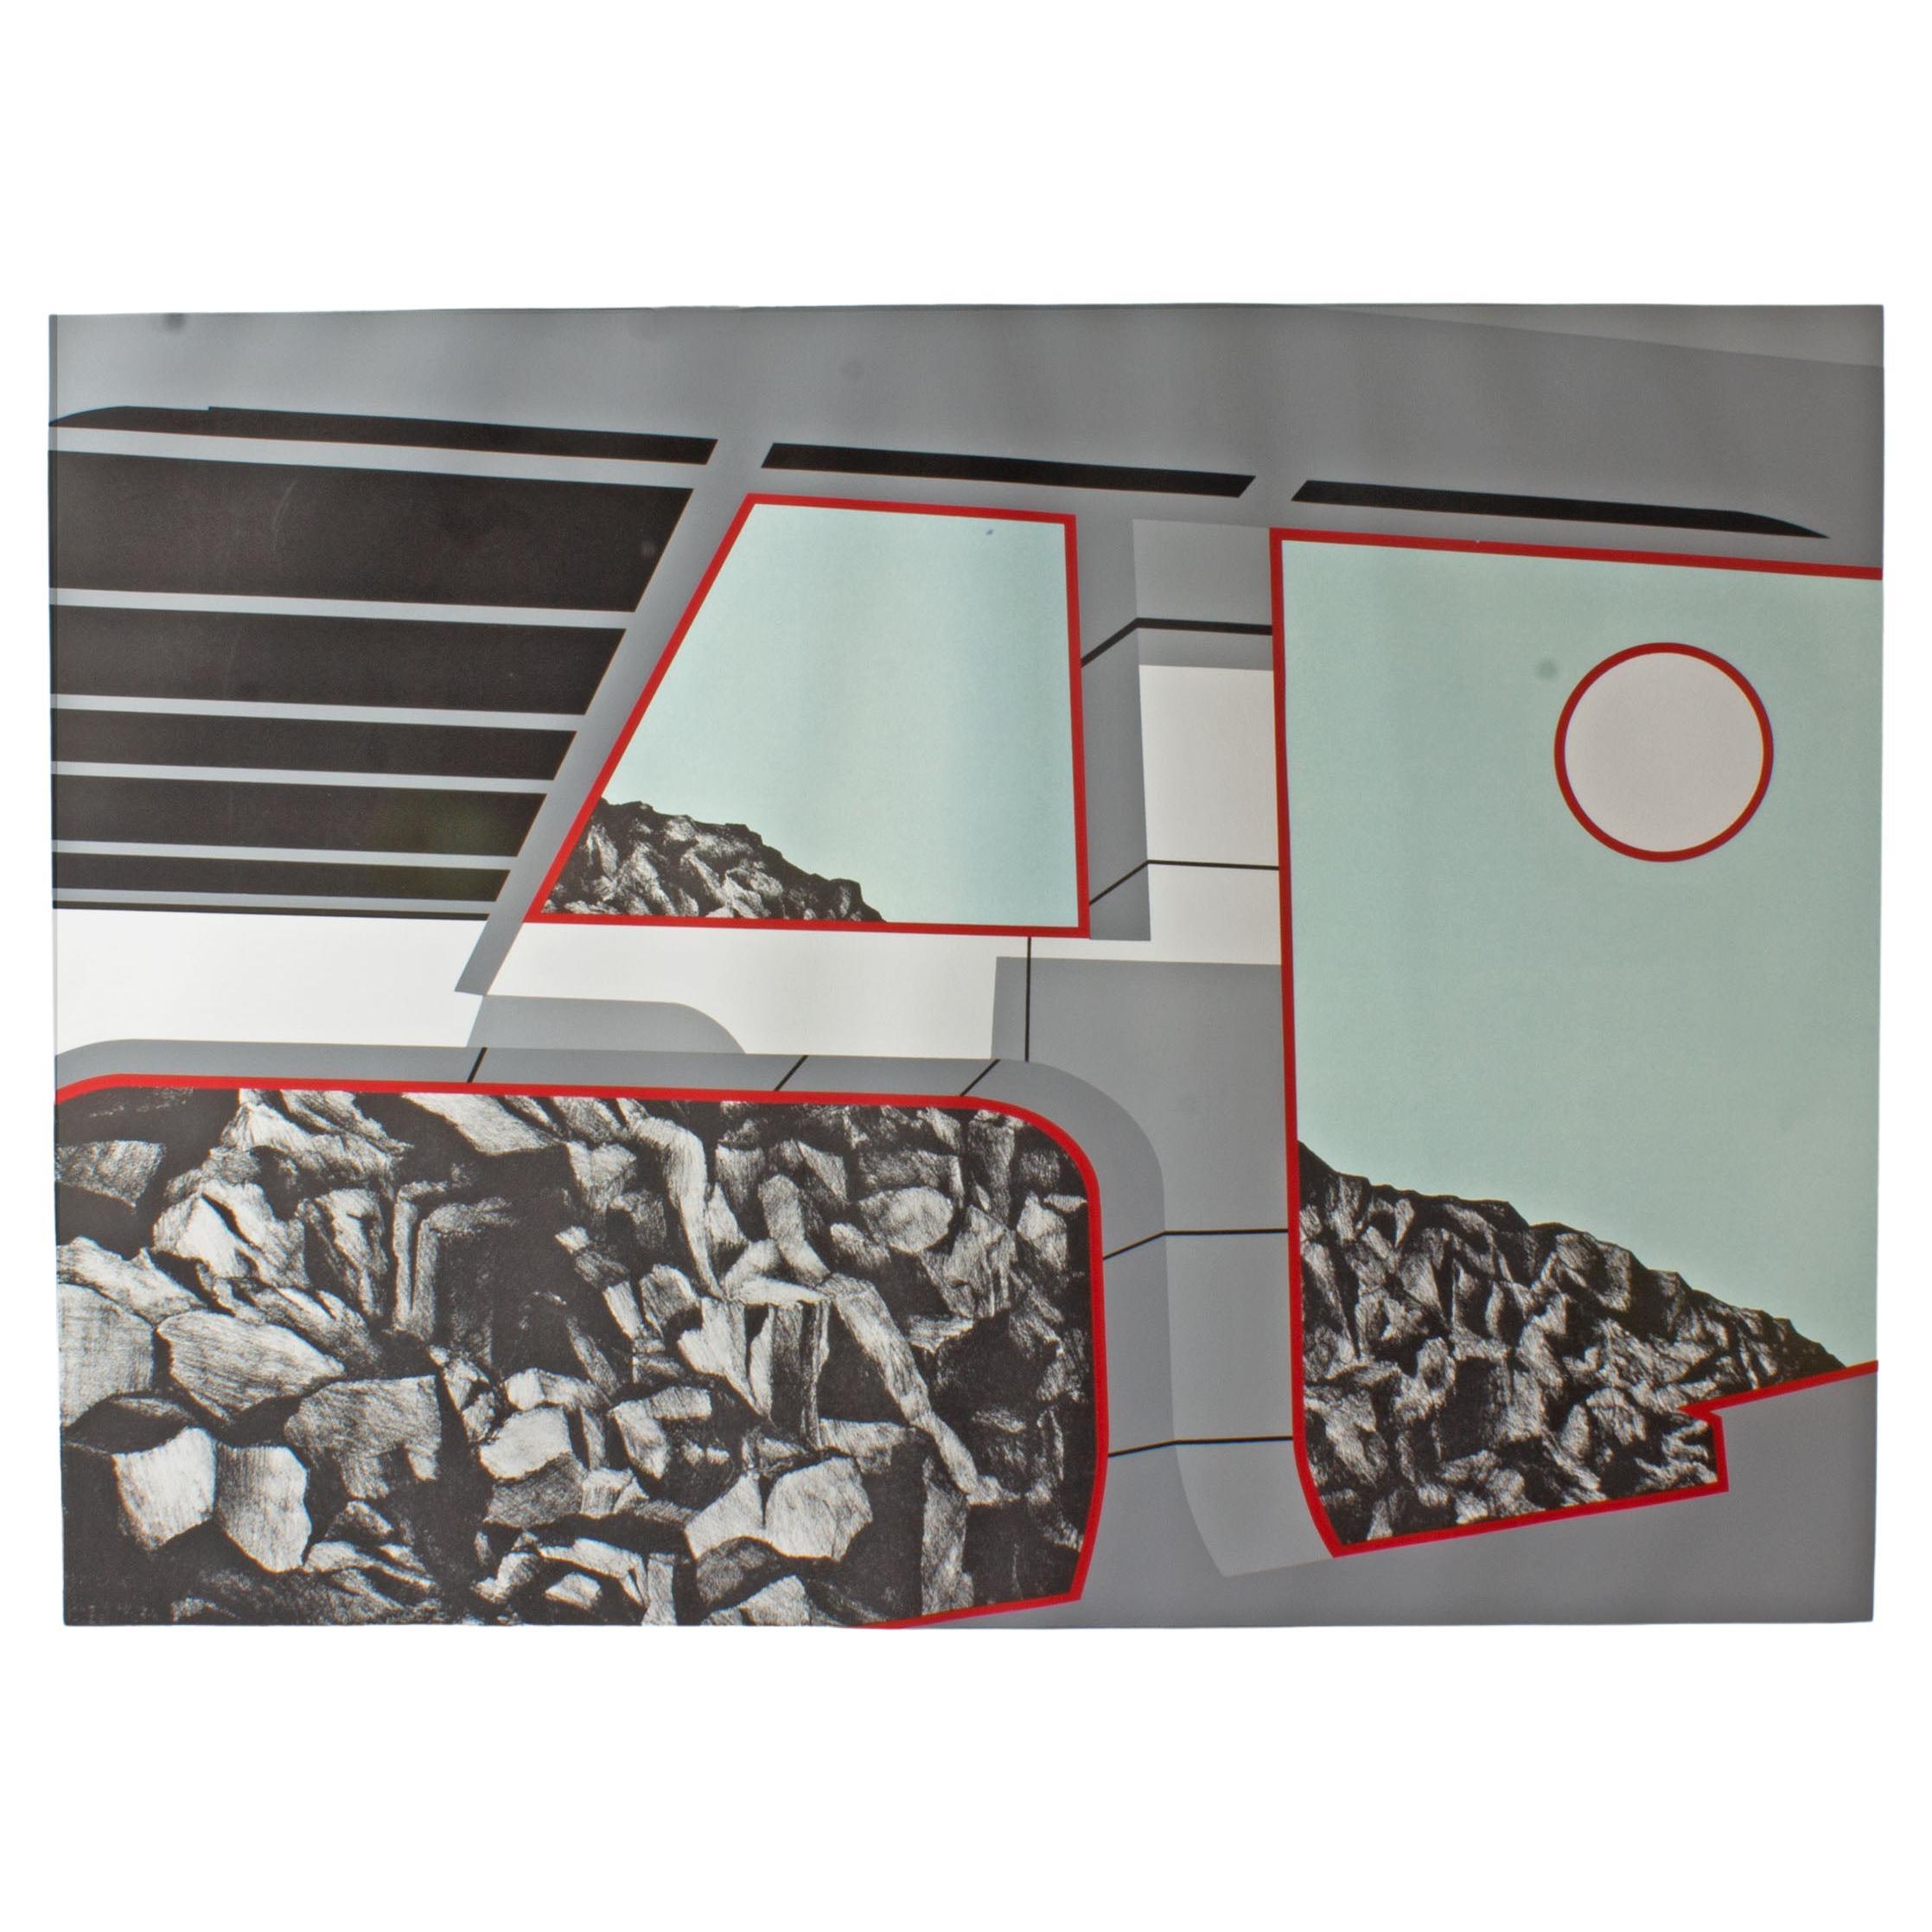 Une épreuve sérigraphique sur papier de 1978 de l'artiste et graveur américain Allan d'Arcangelo (1930-1998). Cette impression Pop Art bleu clair, grise, noire, rouge et blanche représente une vue rocheuse depuis l'intérieur d'un véhicule de